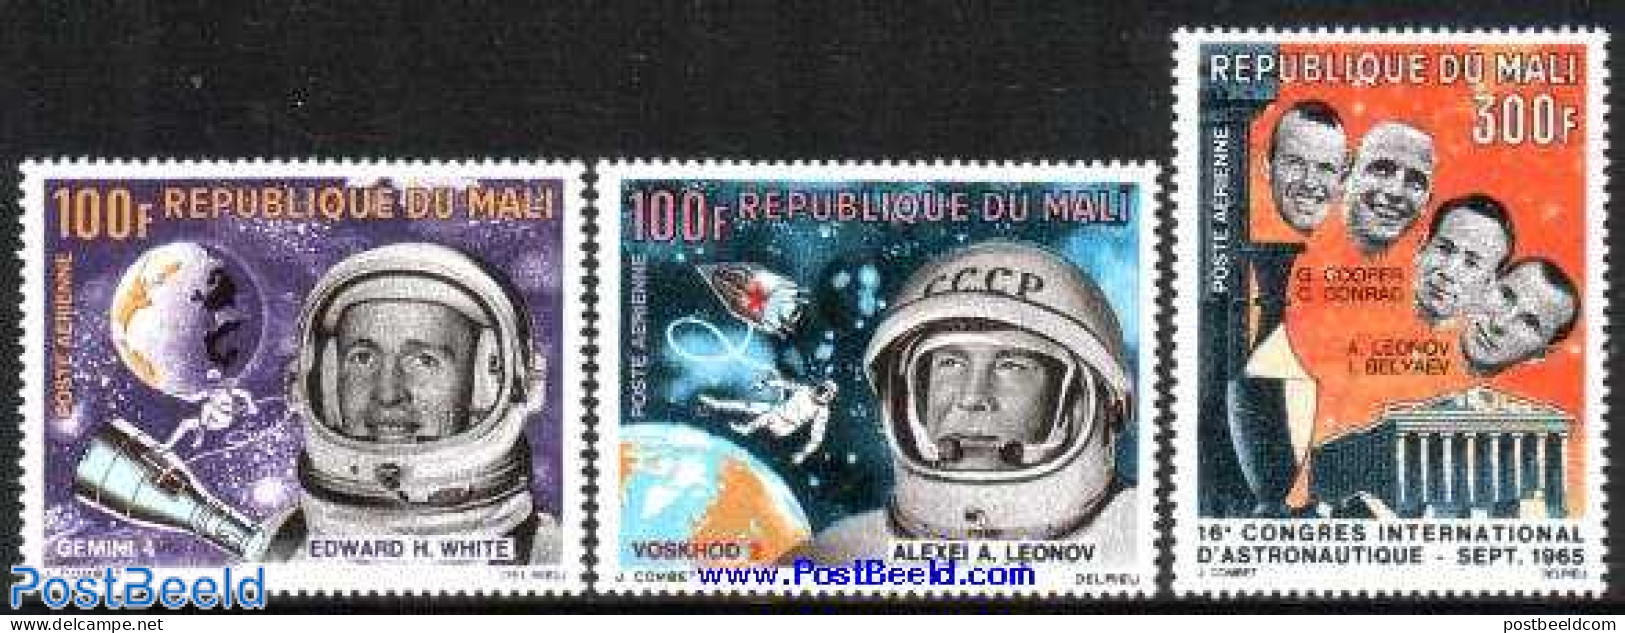 Mali 1966 Space Programme 3v, Mint NH, Transport - Space Exploration - Mali (1959-...)